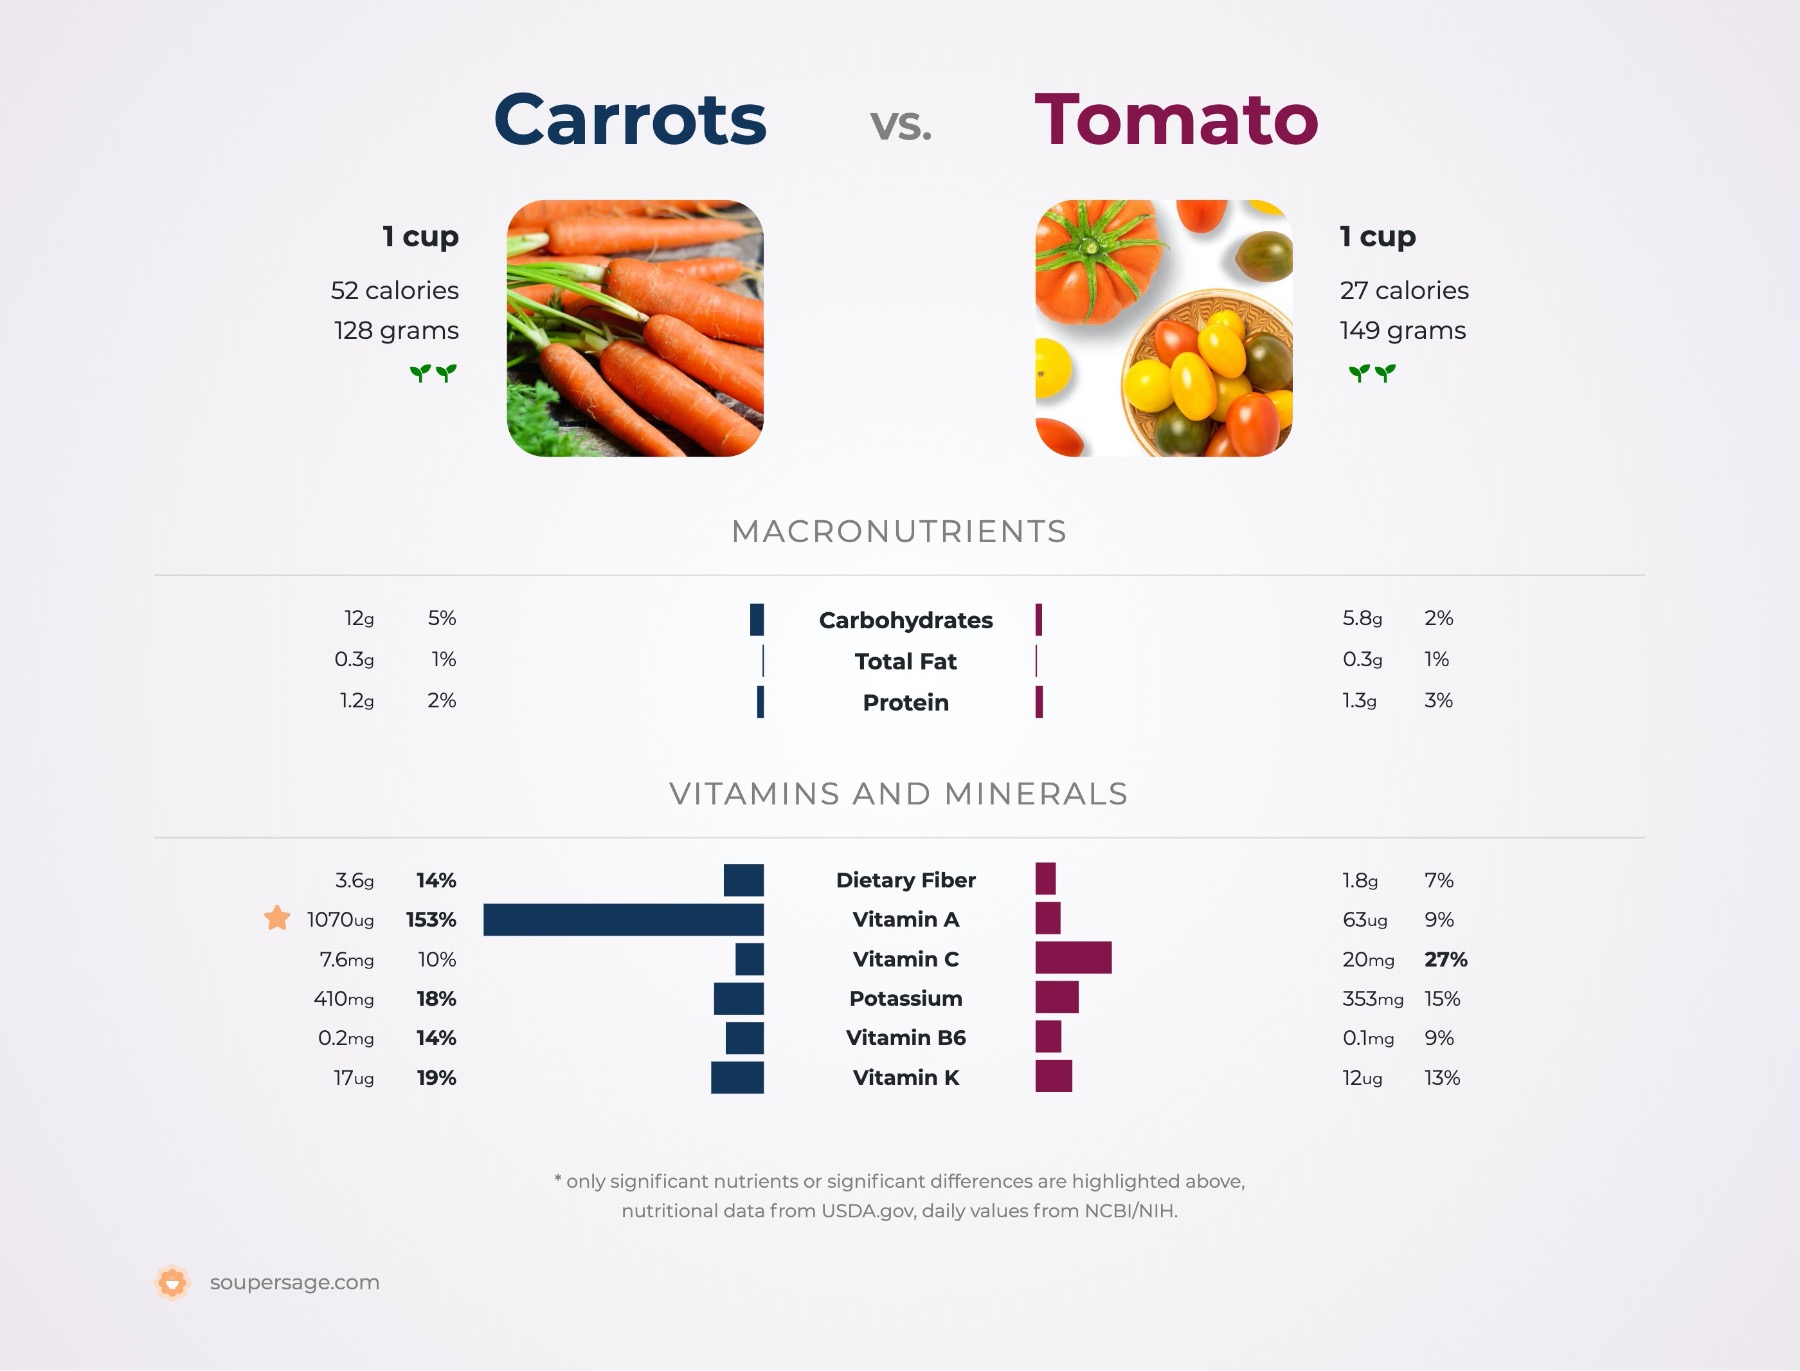 nutrition comparison of carrots vs. tomato